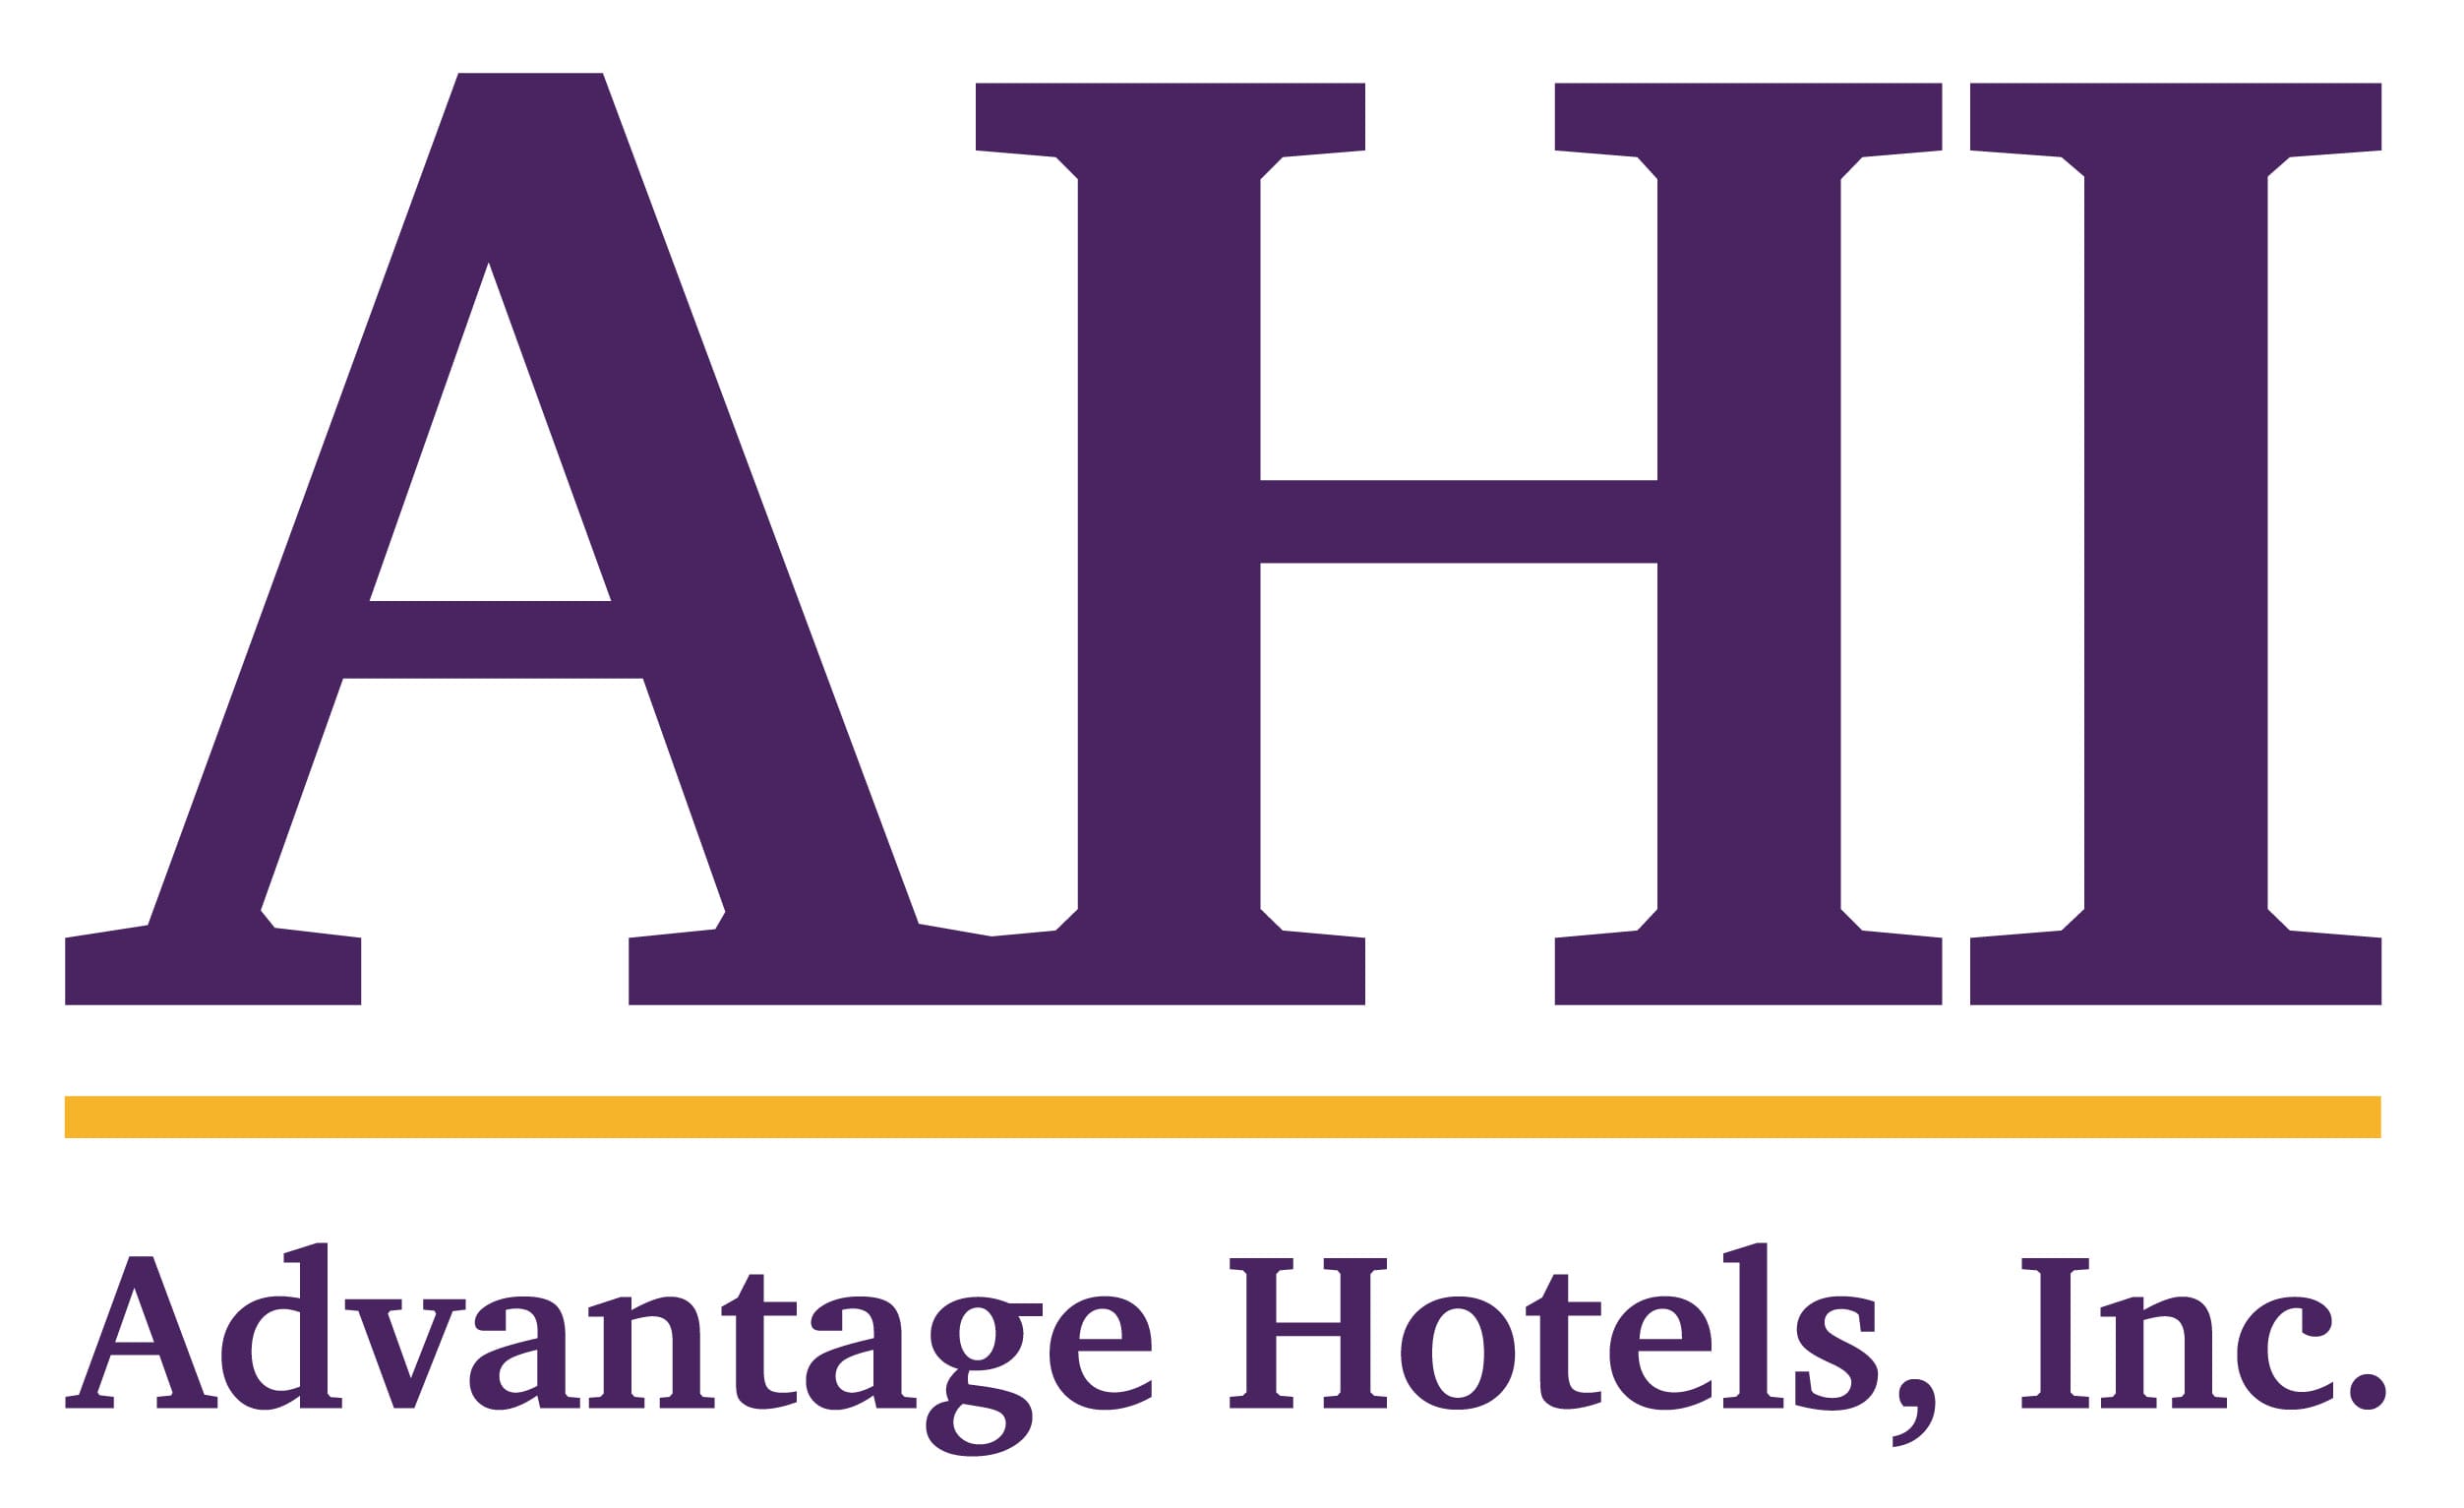 AHI_logo